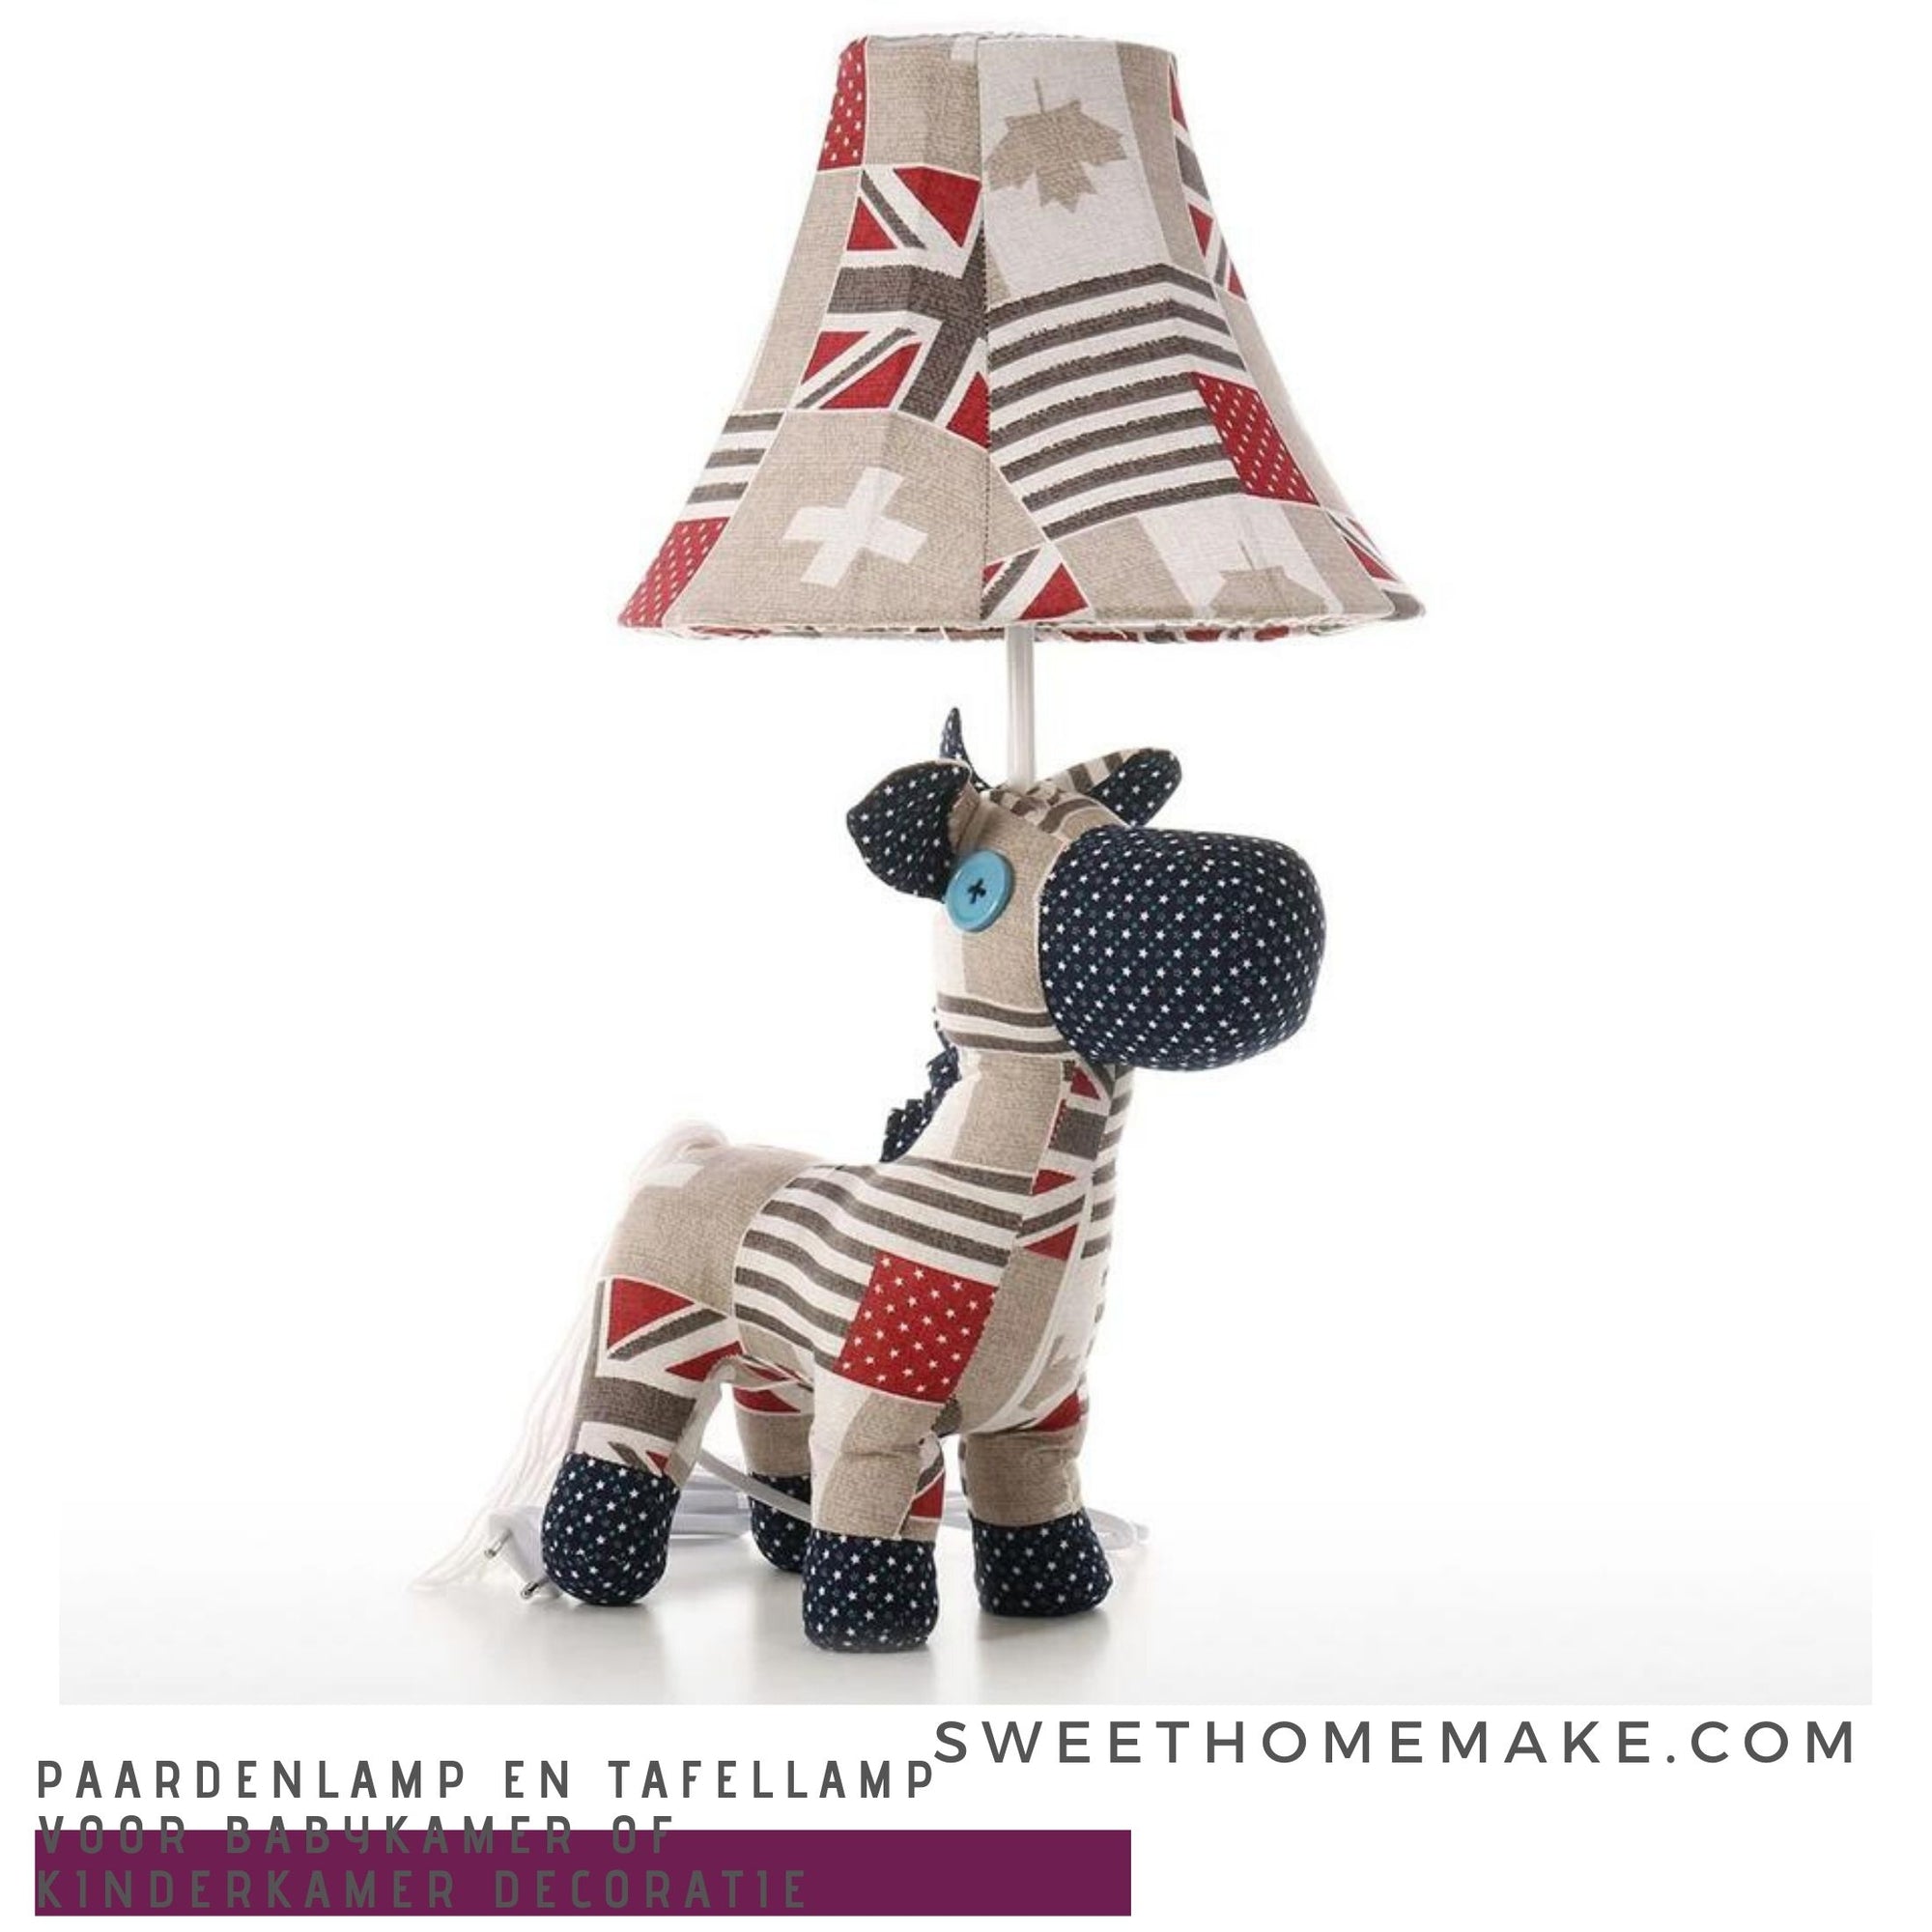 Paardenlamp en Tafellamp Woonaccessoires voor Babykamer of Kinderkamer Decoratie